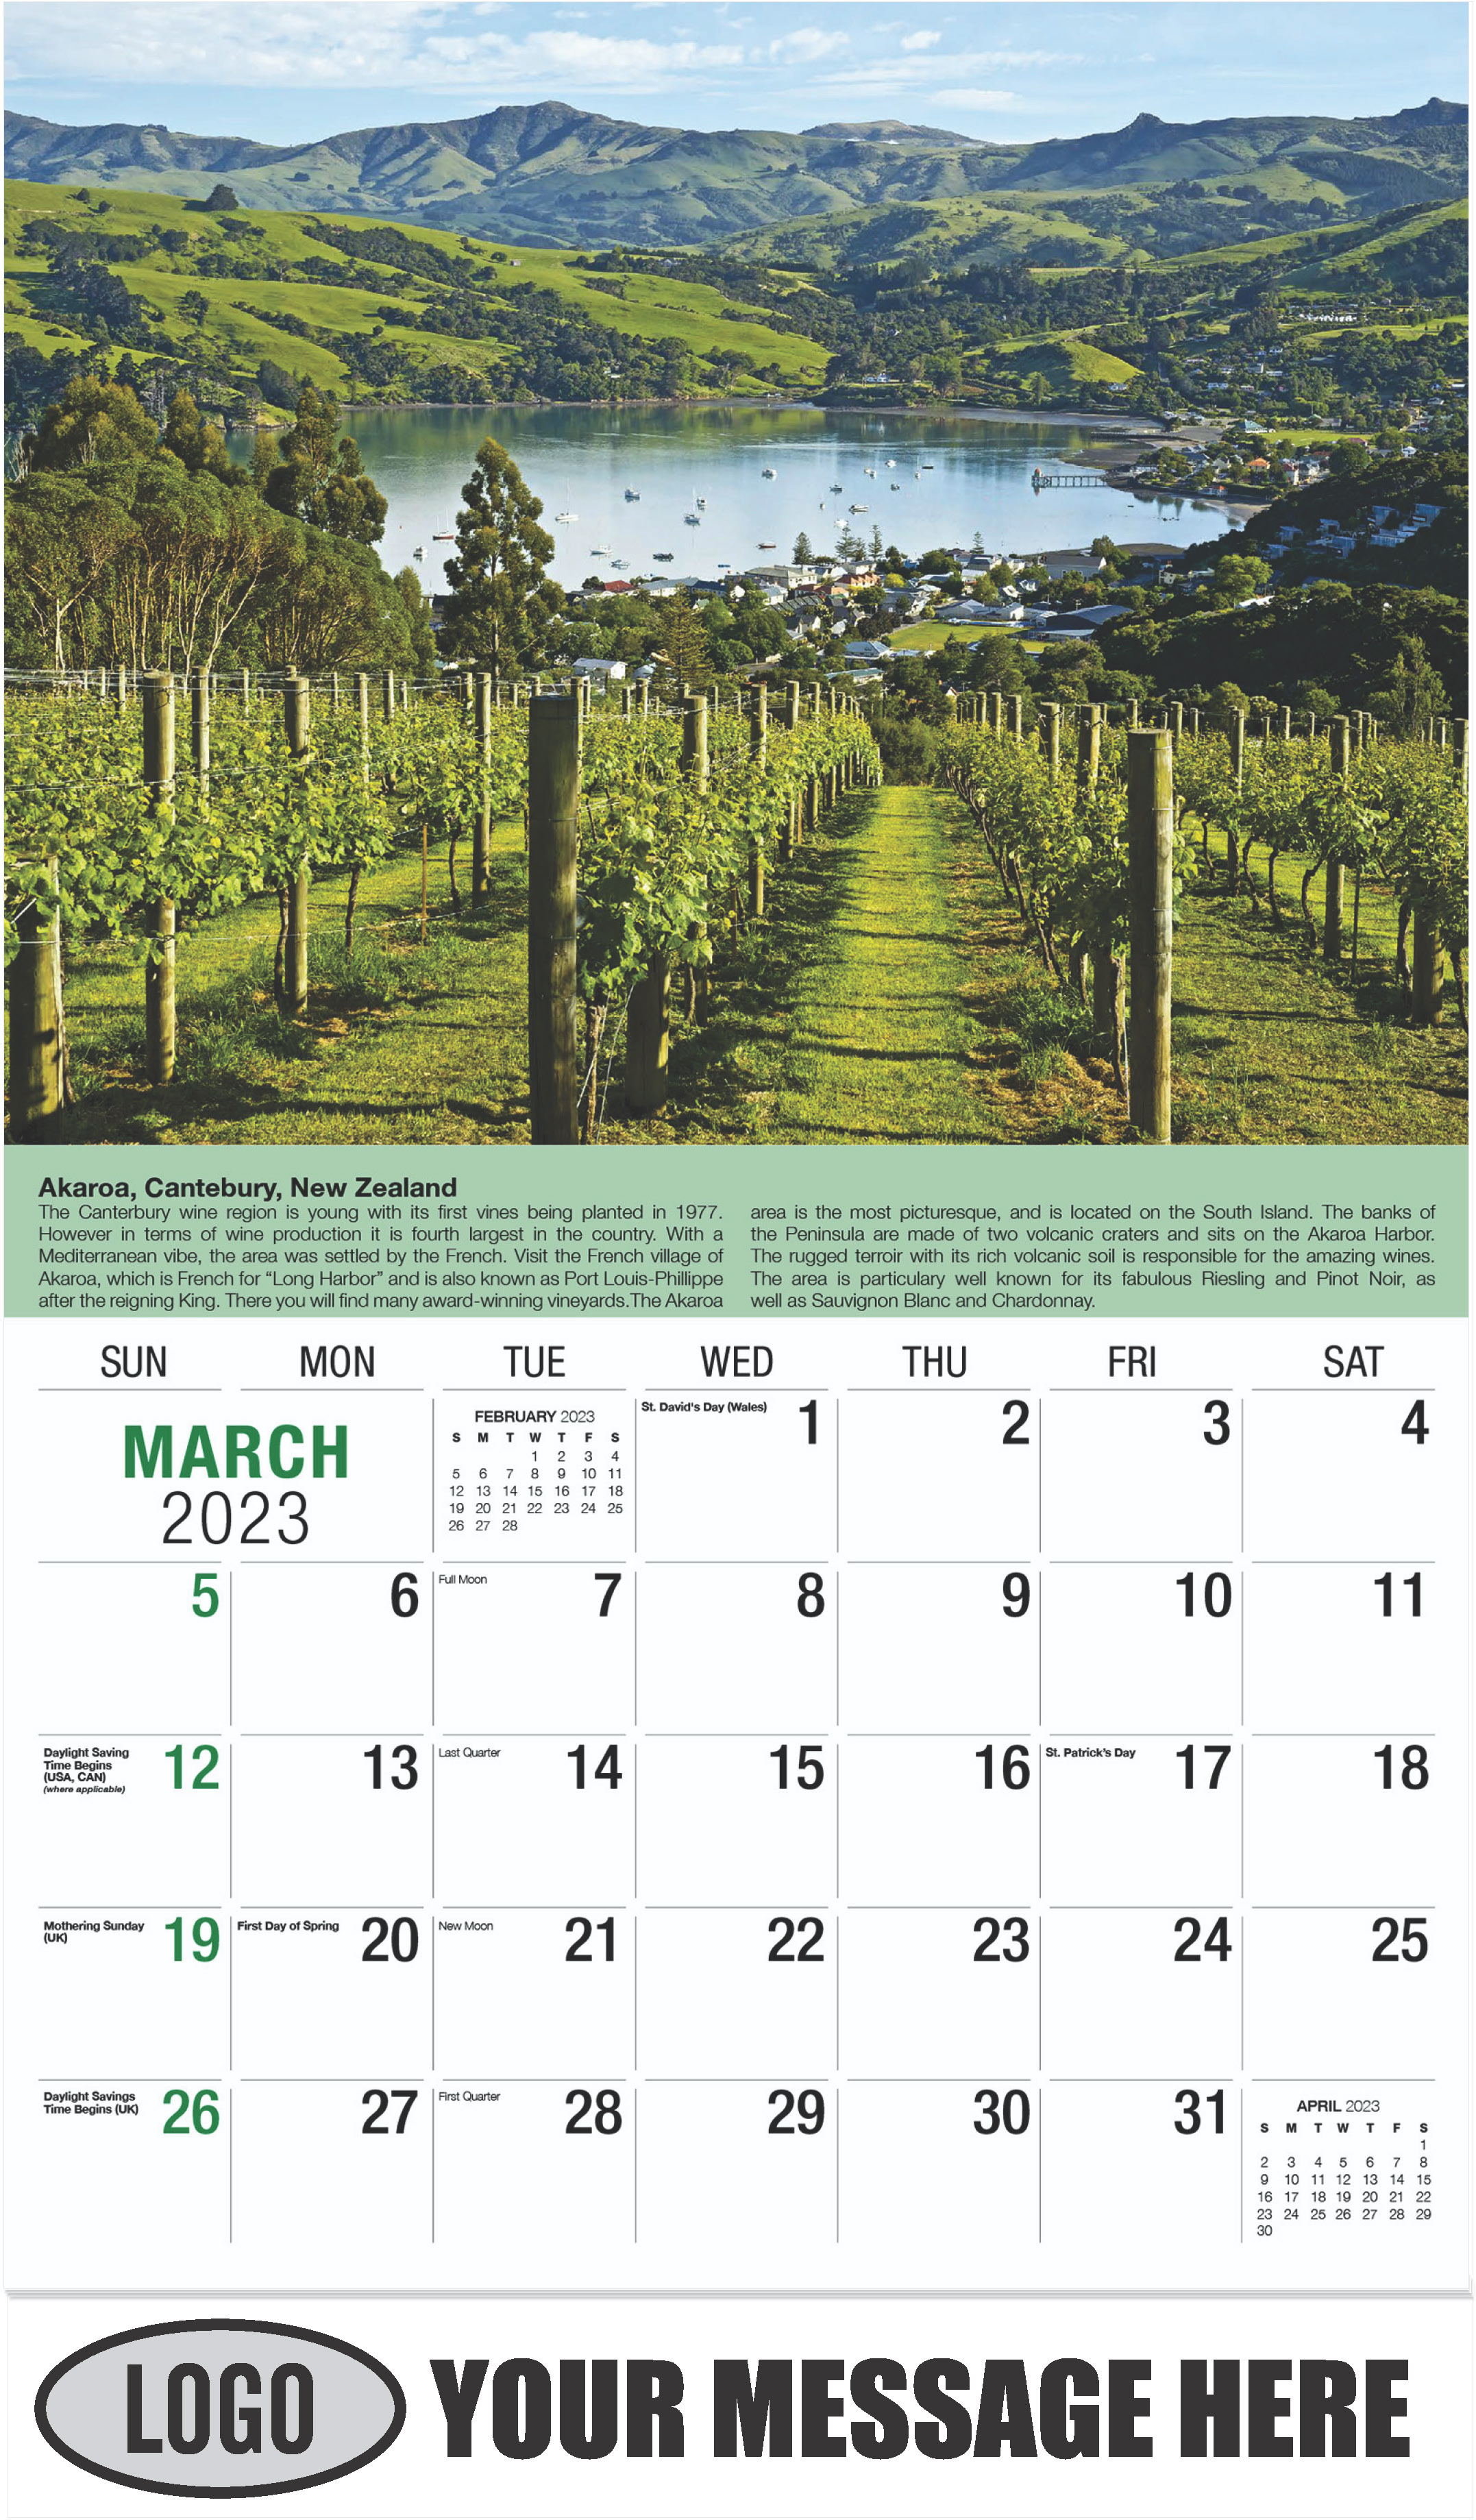 Wine Tips Calendar - March - Vintages 2023 Promotional Calendar